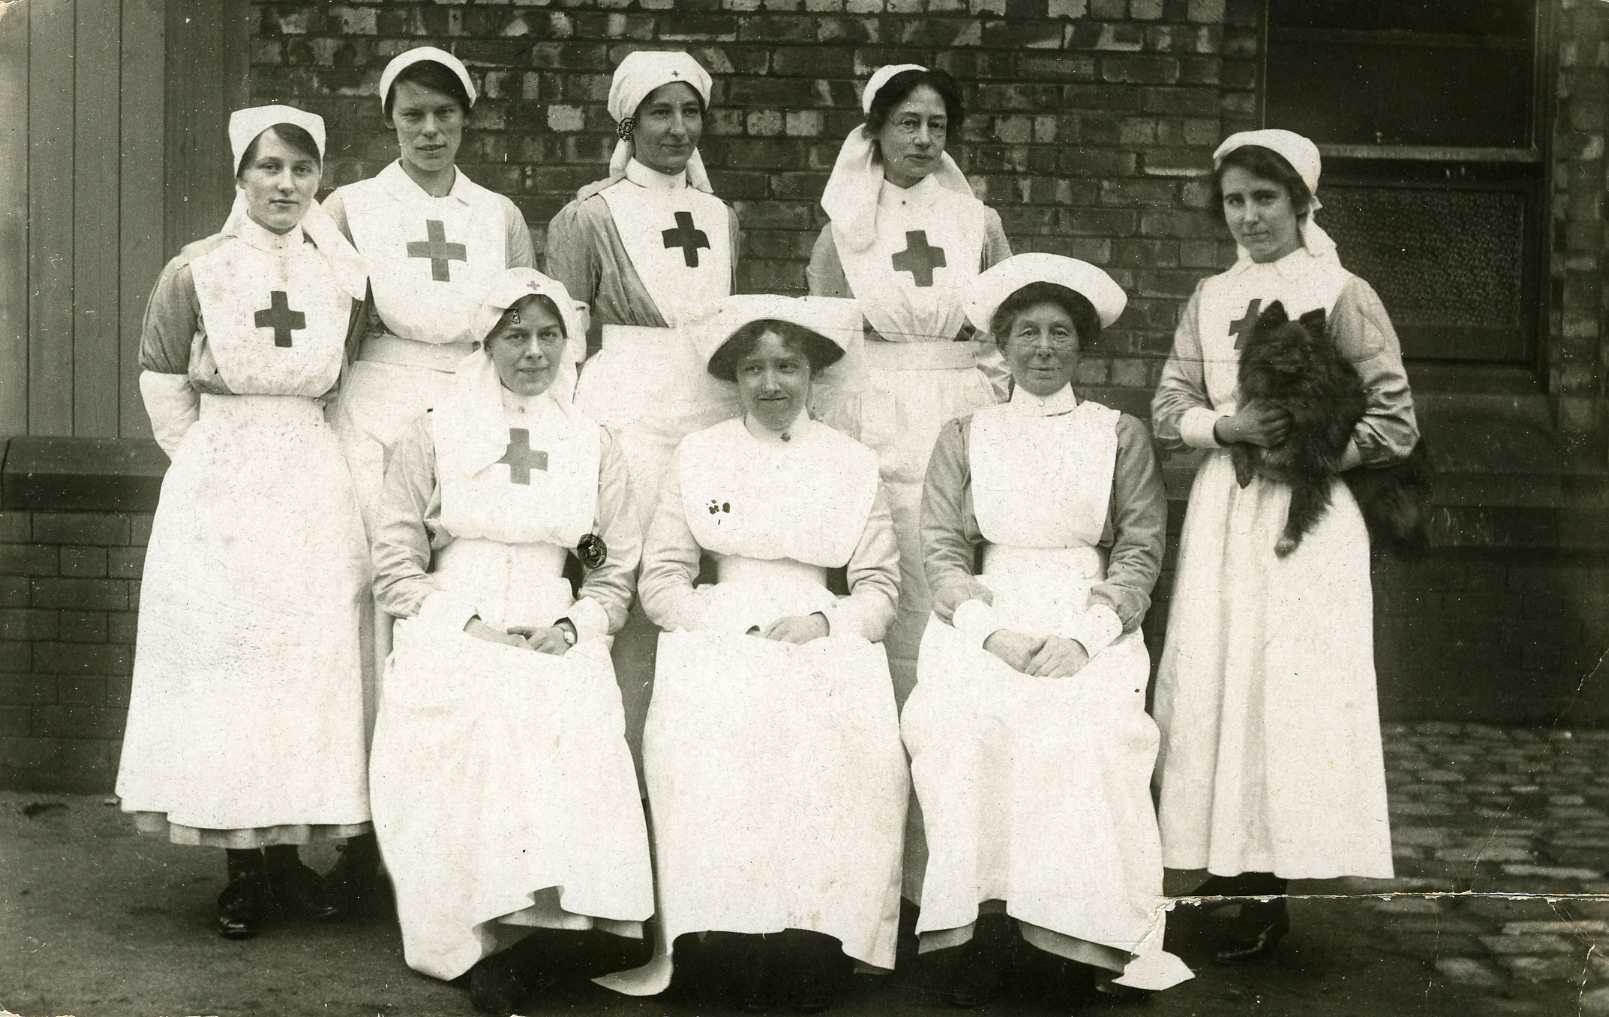 Women's involvement, WW1 volunteers